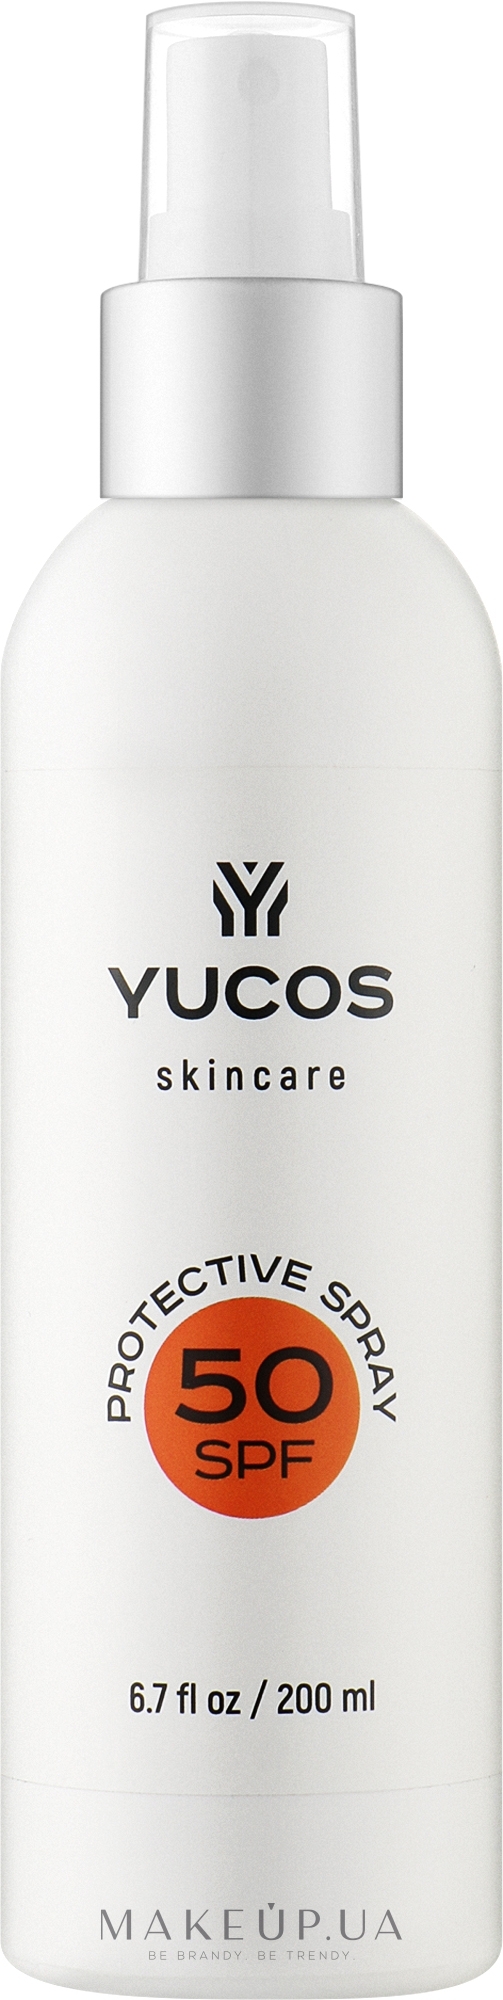 Сонцезахисний спрей для тіла SPF 50 - Yucos Skincare Protective Spray SPF 50 — фото 200ml